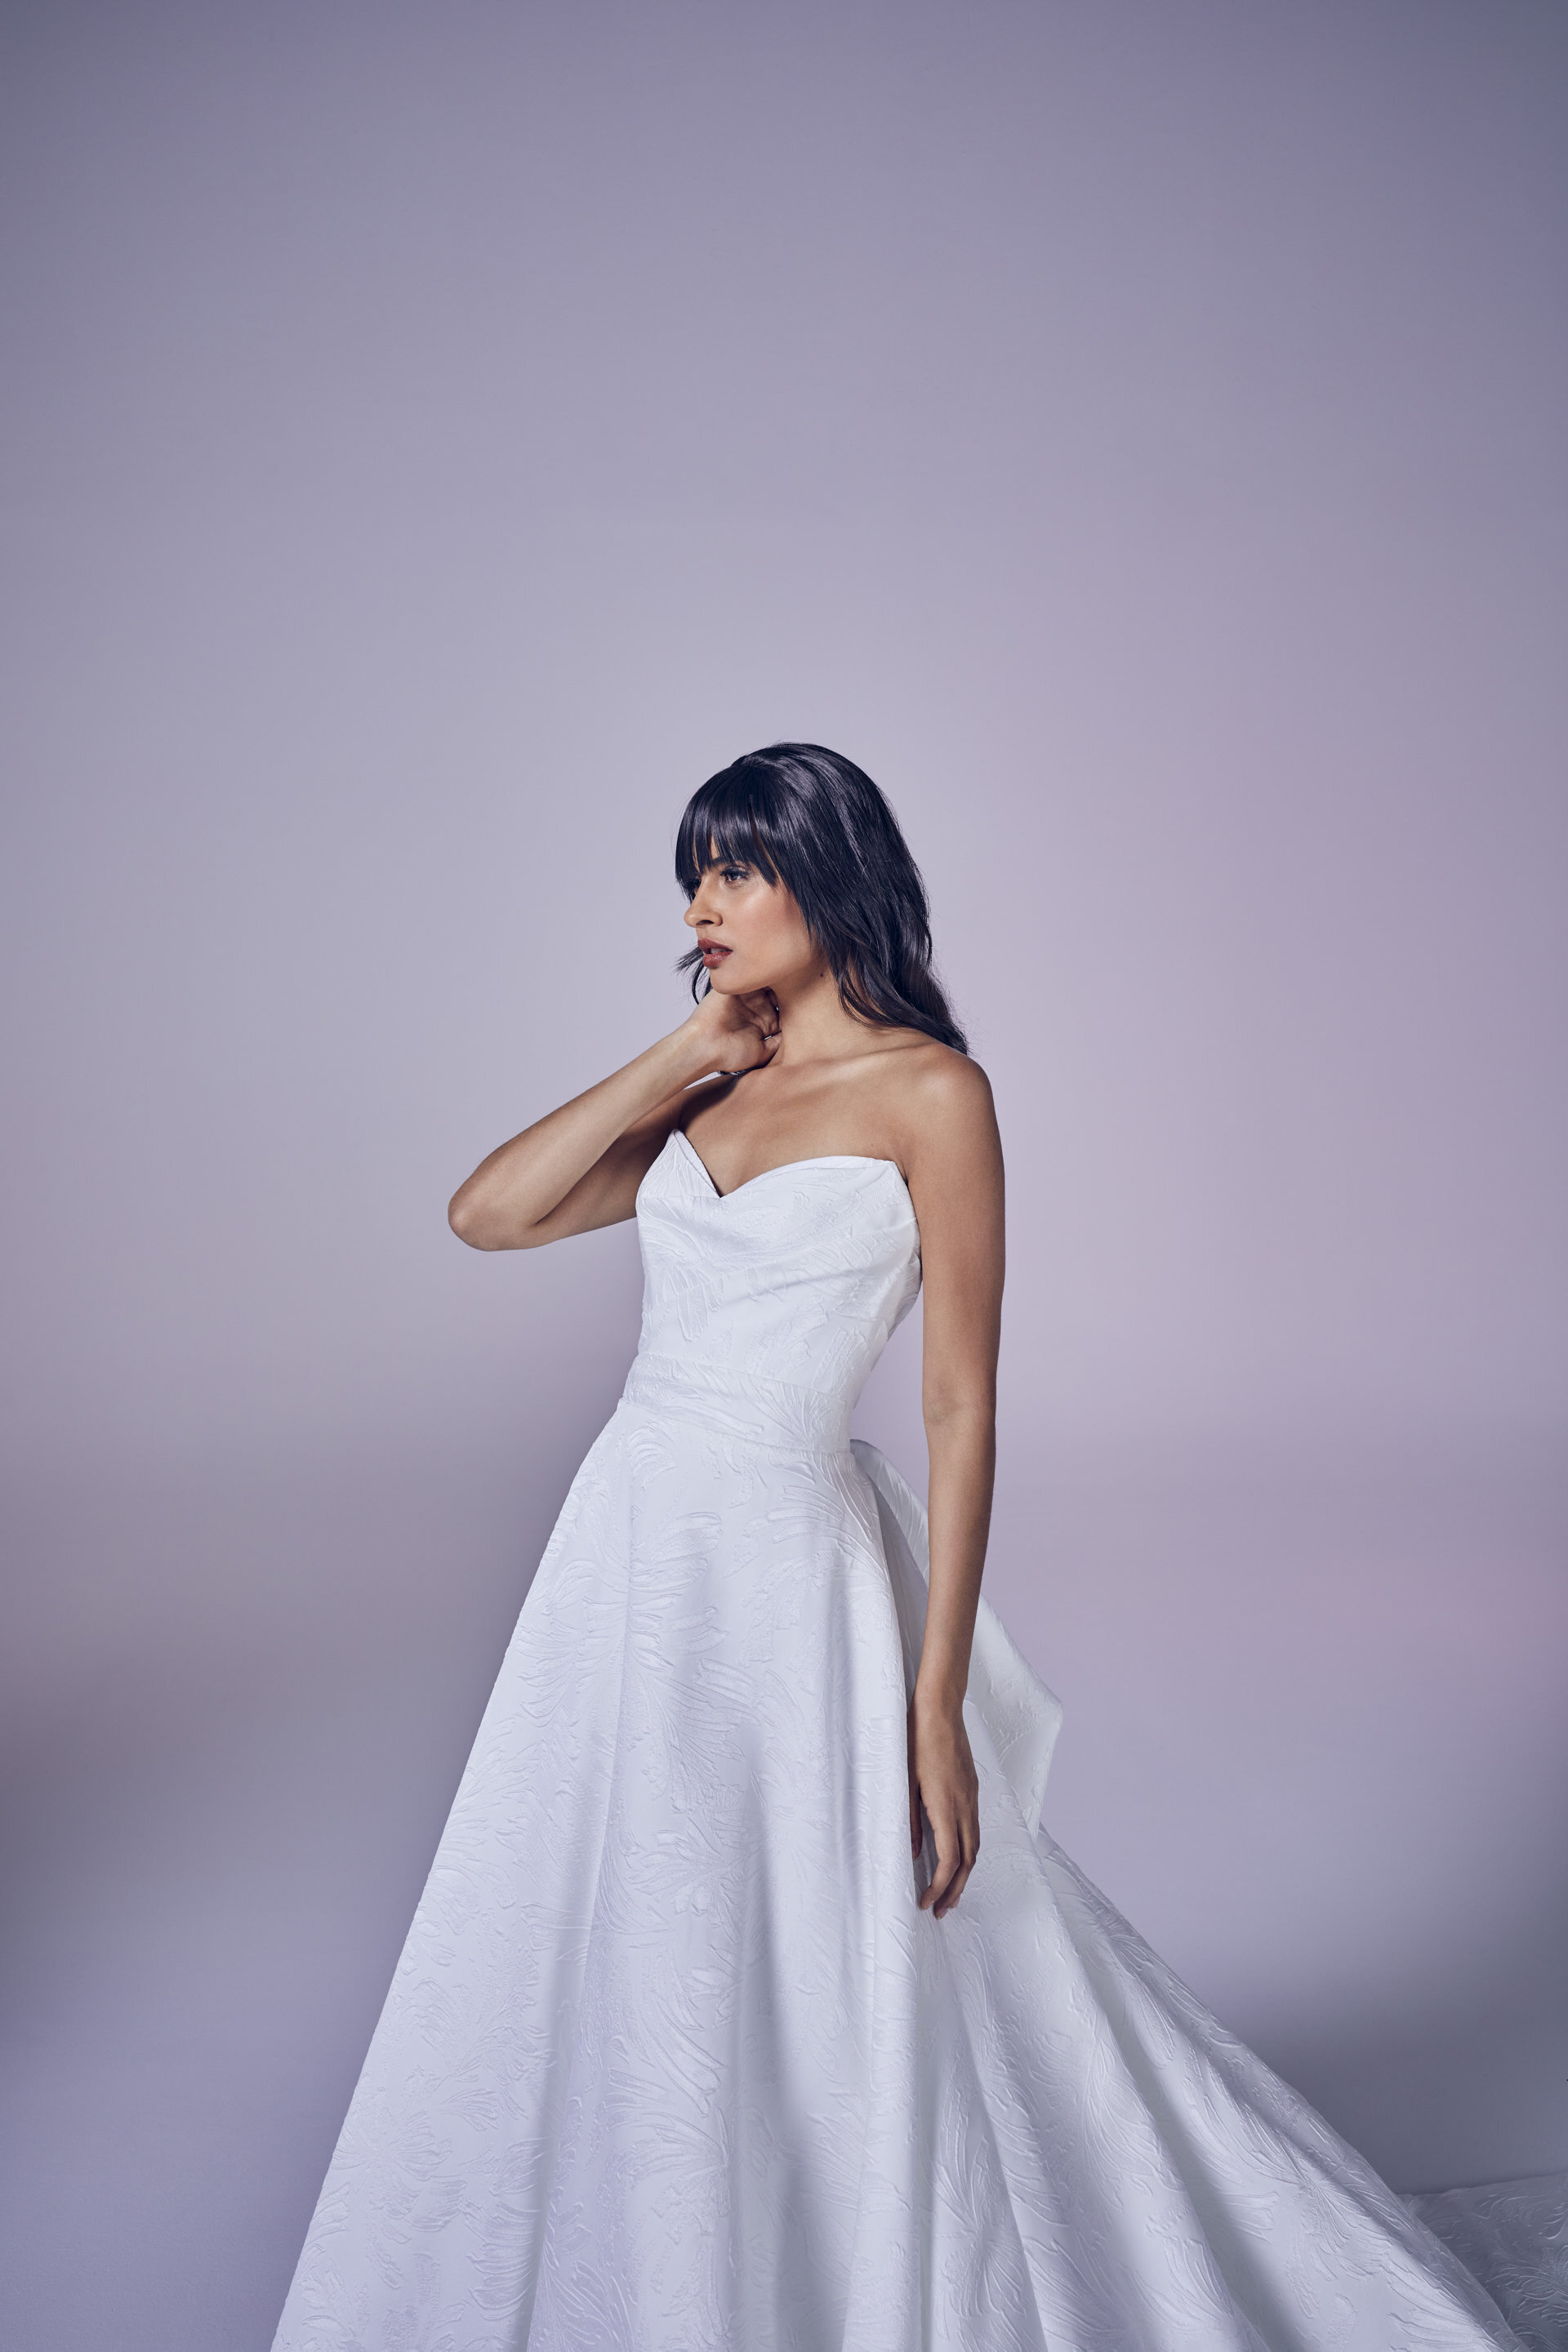 operetta-crop-wedding-dresses-uk-suzanne-neville-collection-2021-modern-love-2880.jpg